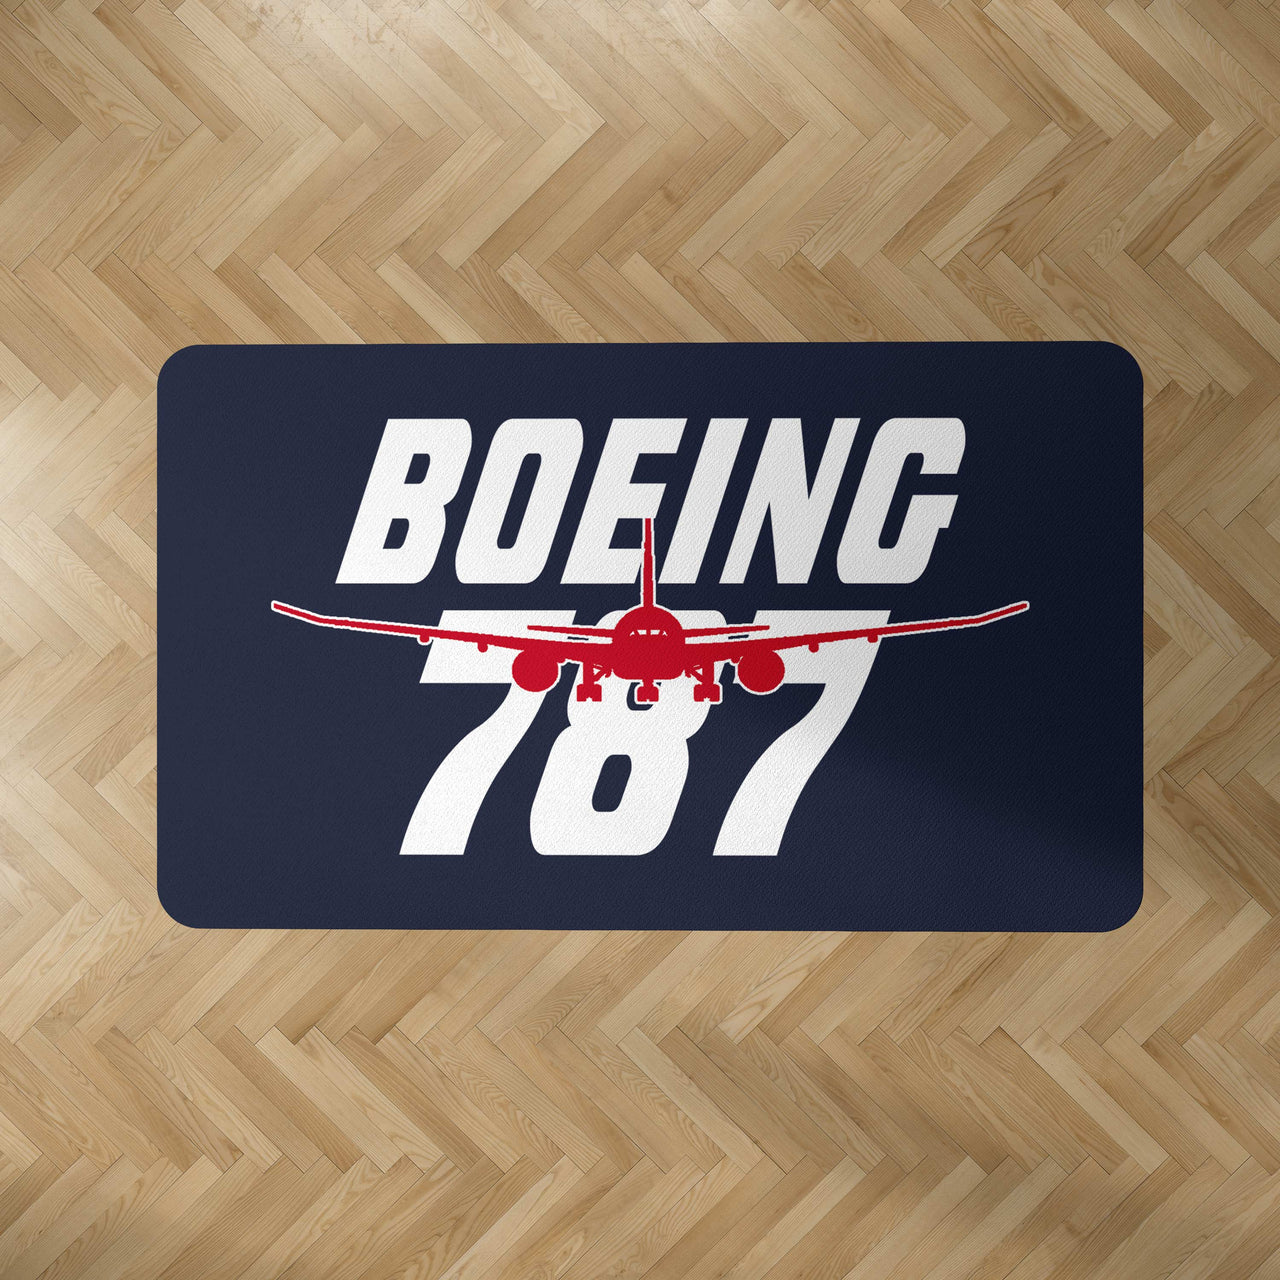 Amazing Boeing 787 Designed Carpet & Floor Mats